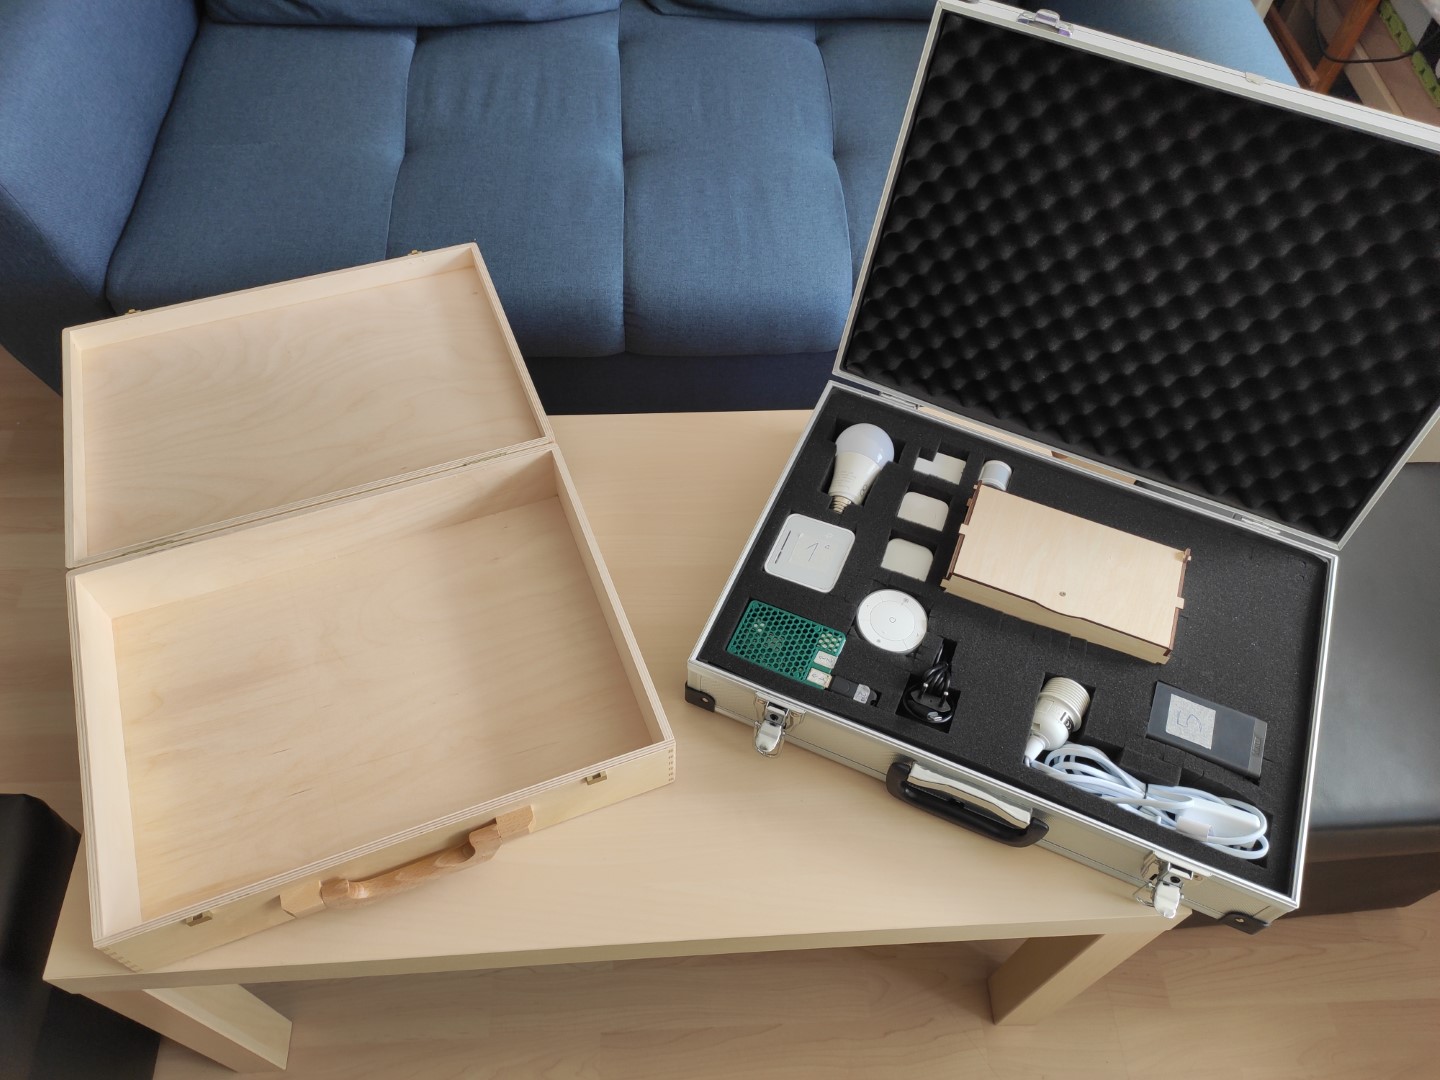 INTIA-Koffer vergleich zwischen Holz und Aluminium.